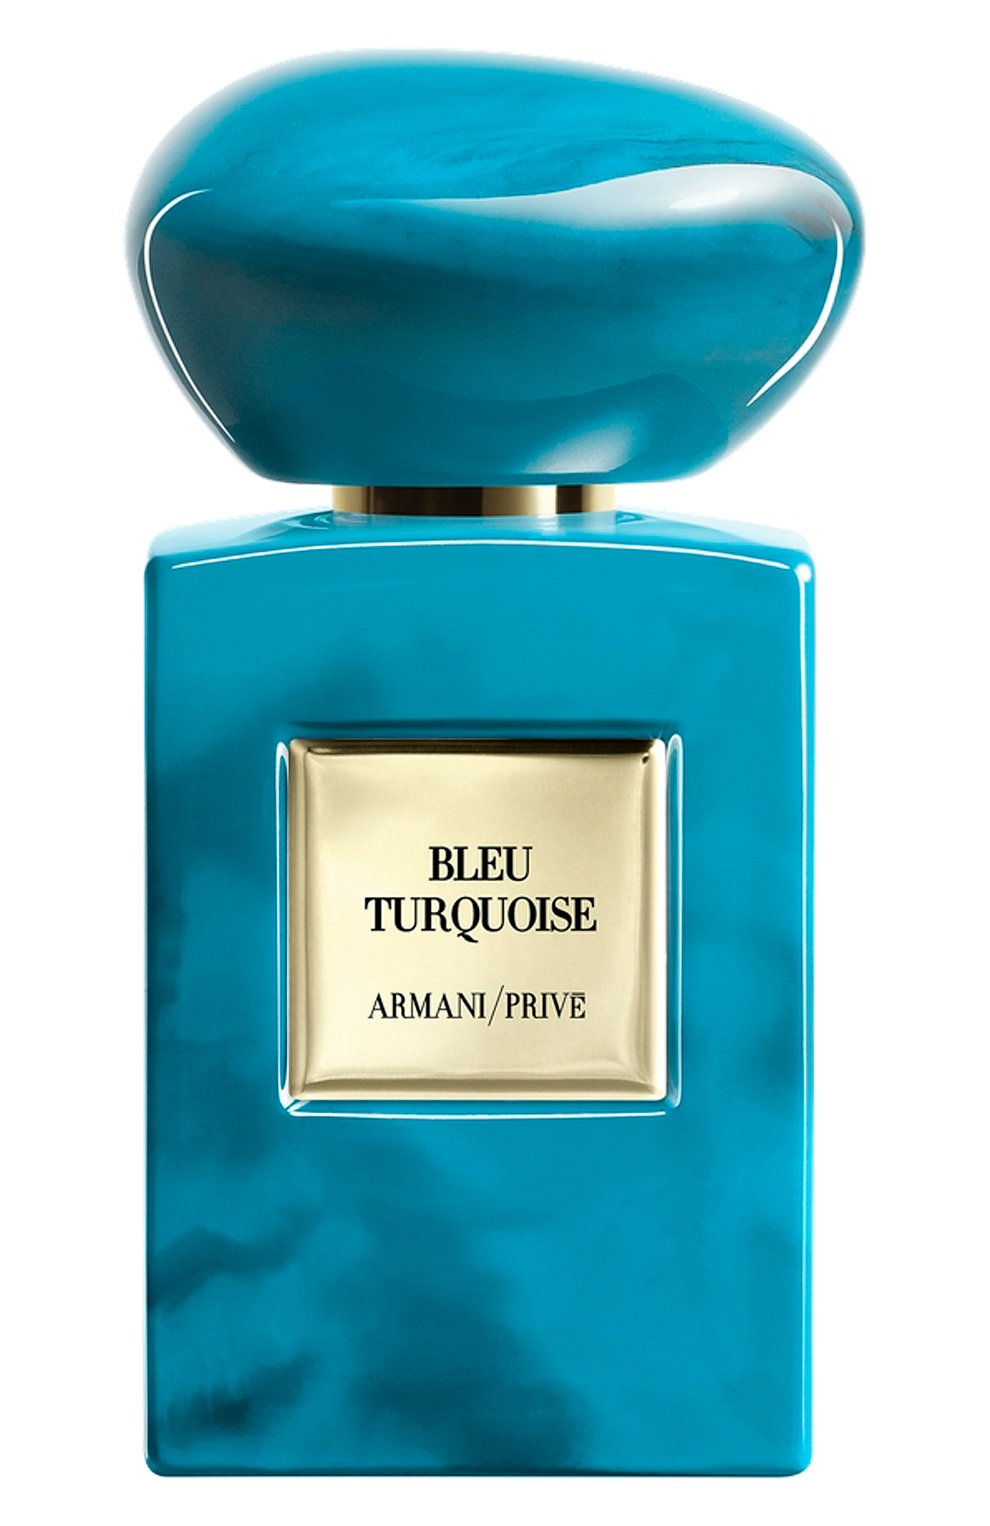 Армани приве духи. Giorgio Armani prive bleu Turquoise 100 ml. Армани Прайв Блю Туркуаз туалетная вода. Giorgio Armani prive Blue Turquoise. Armani prive голубые.